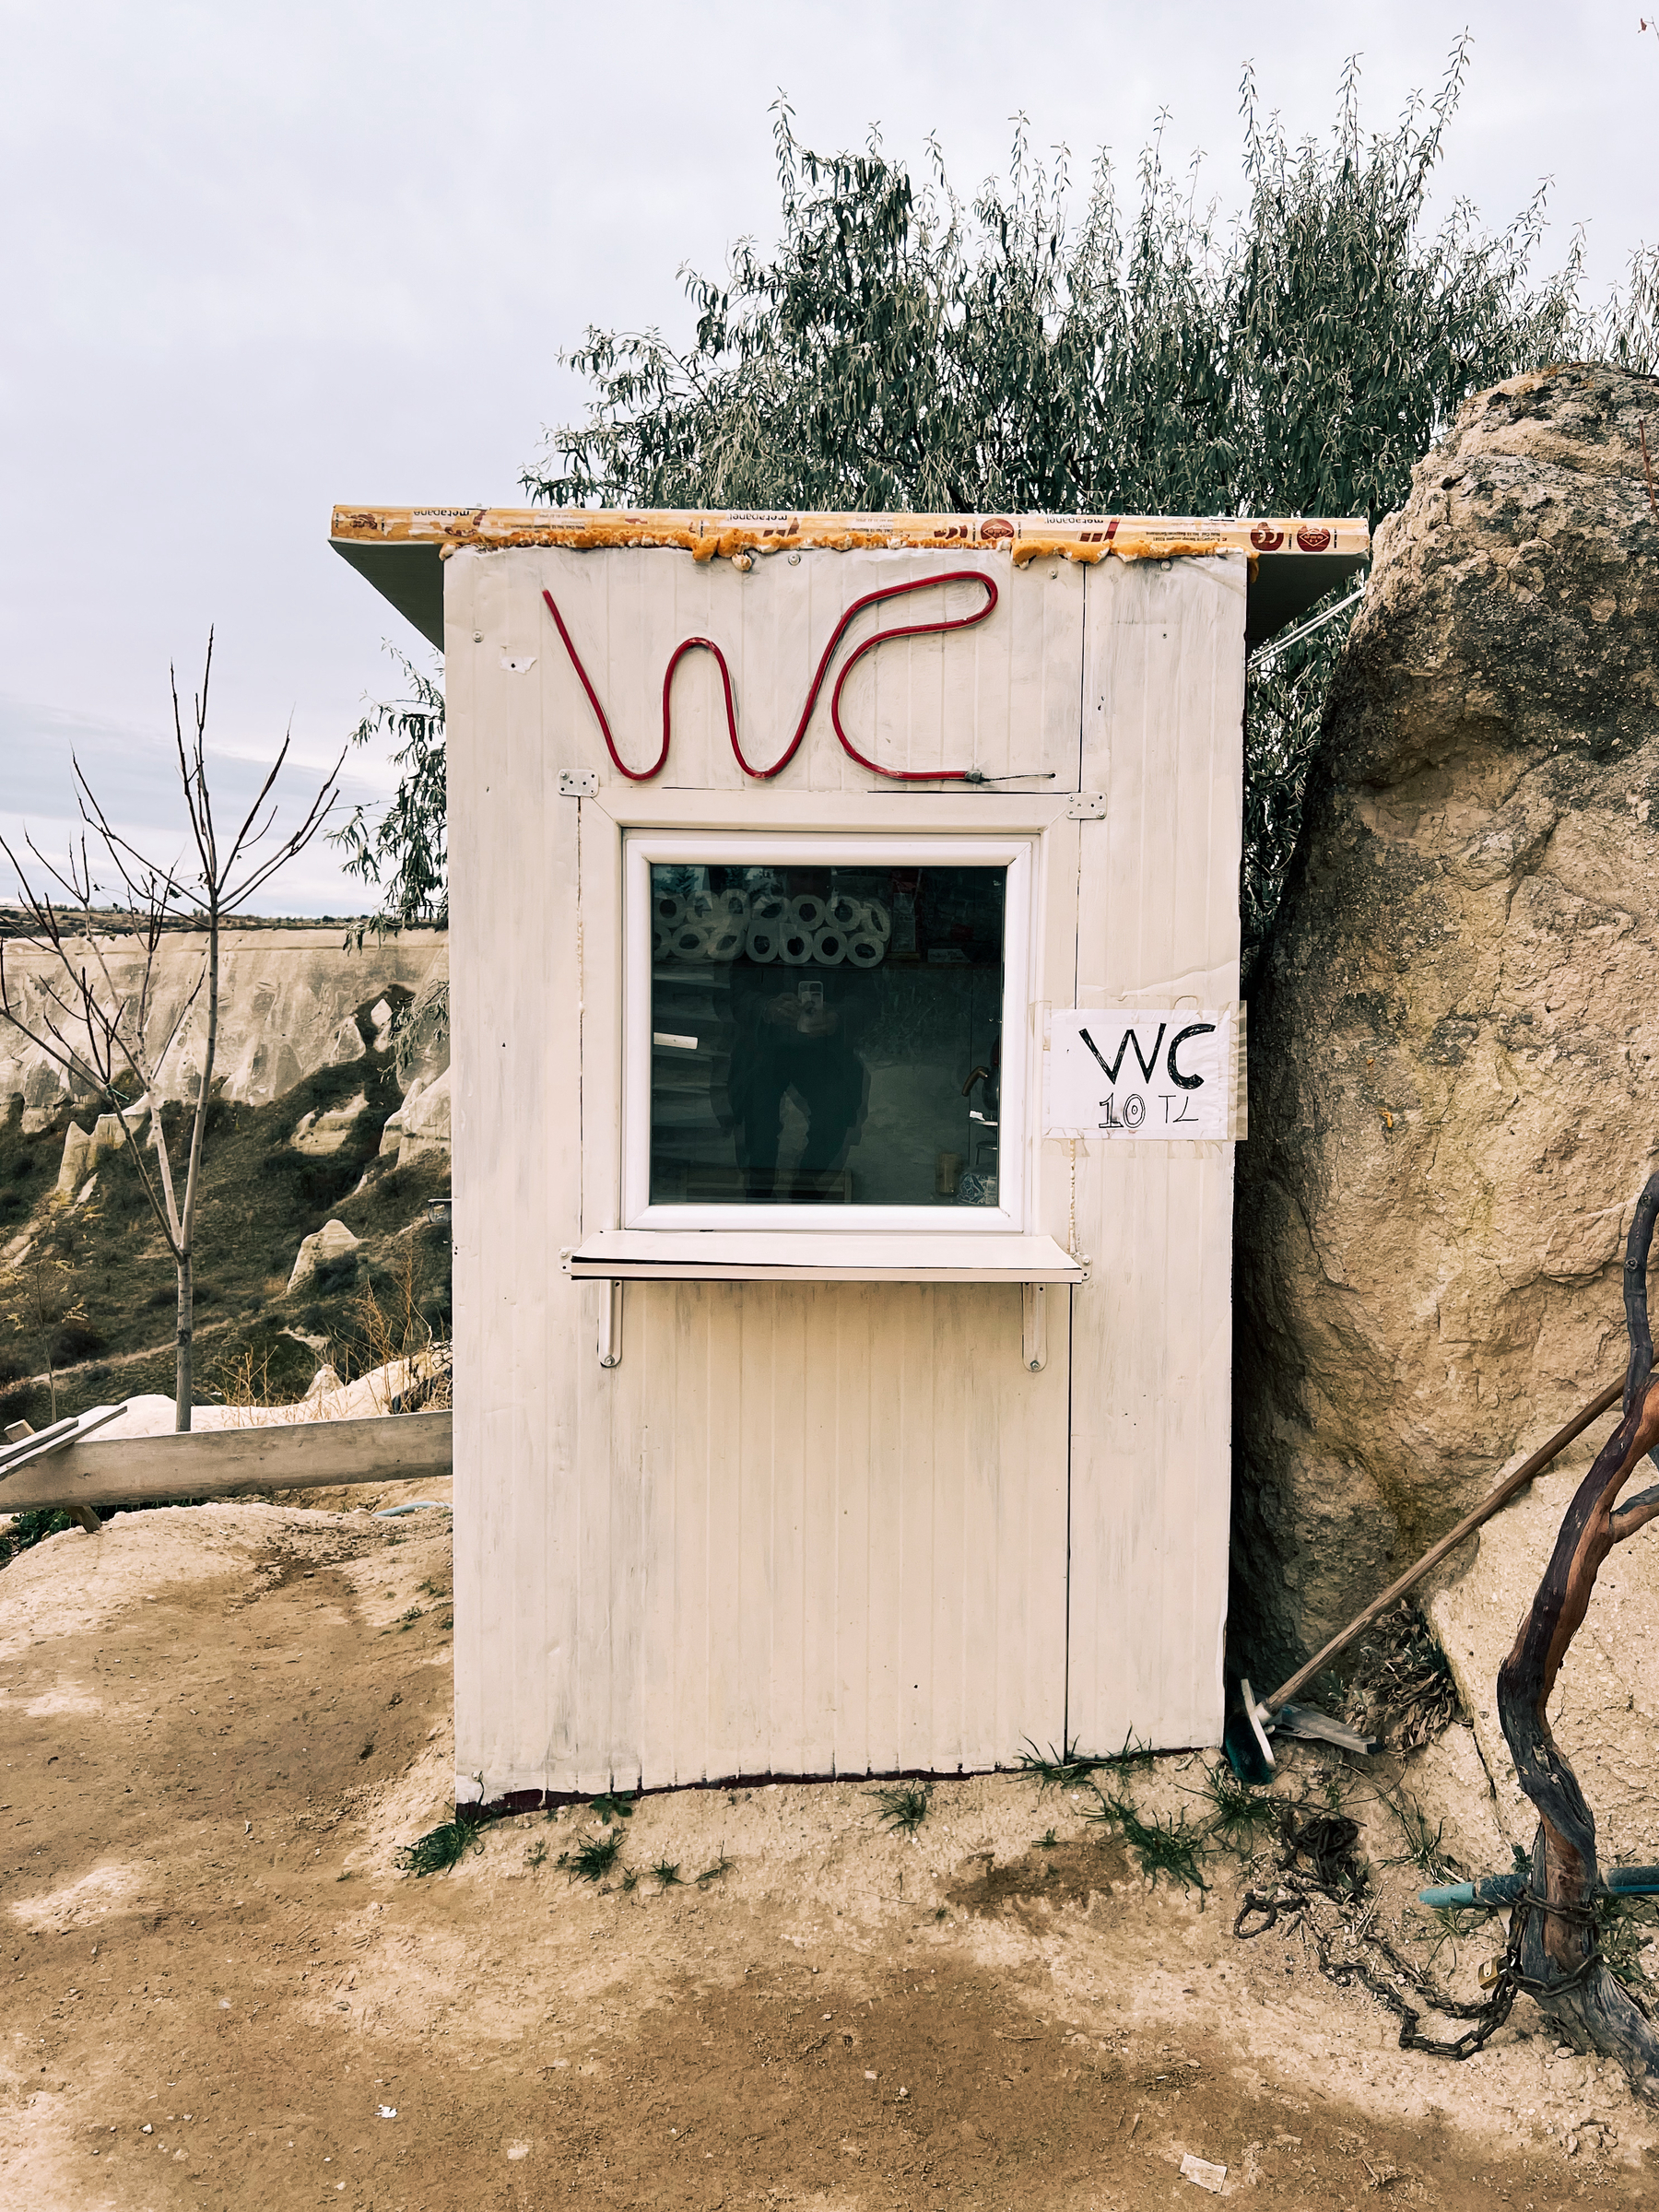 A shed. “WC” written on it. 